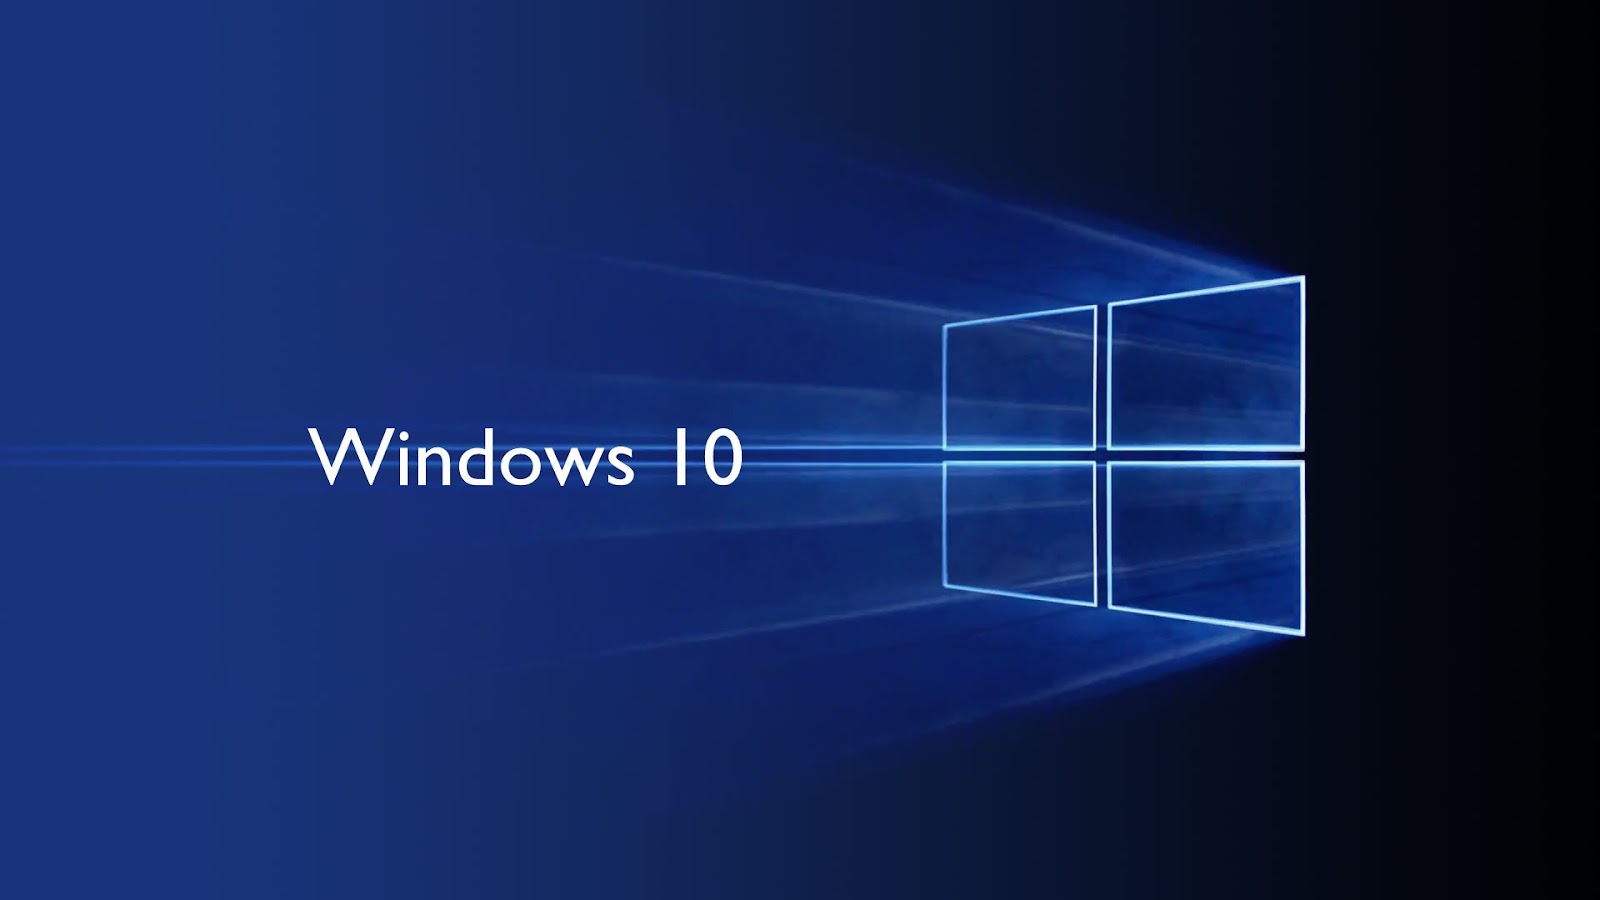 Cách reset máy tính Windows 10 về trạng thái ban đầu, đơn giản ...